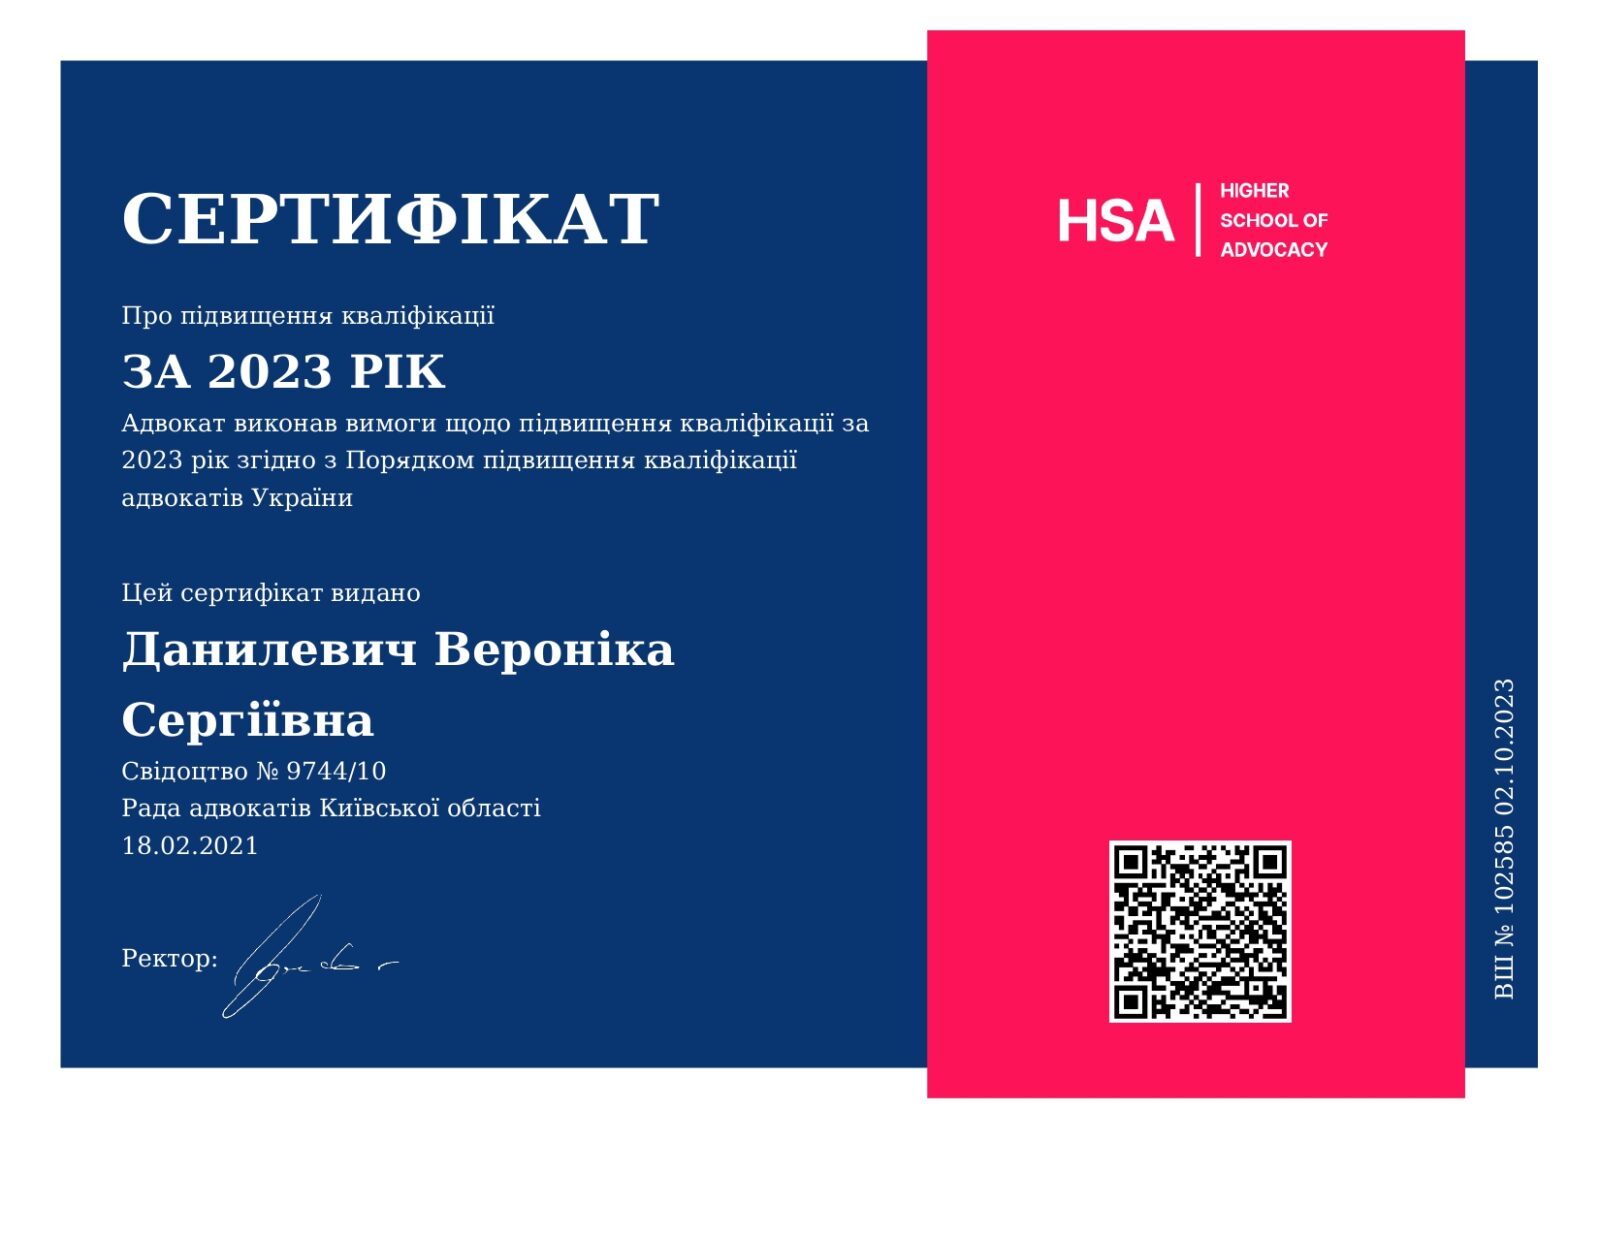 Сертифікат про підвищення кваліфікації адвоката Данилевич Вероніки Сергіївни за 2023 рік